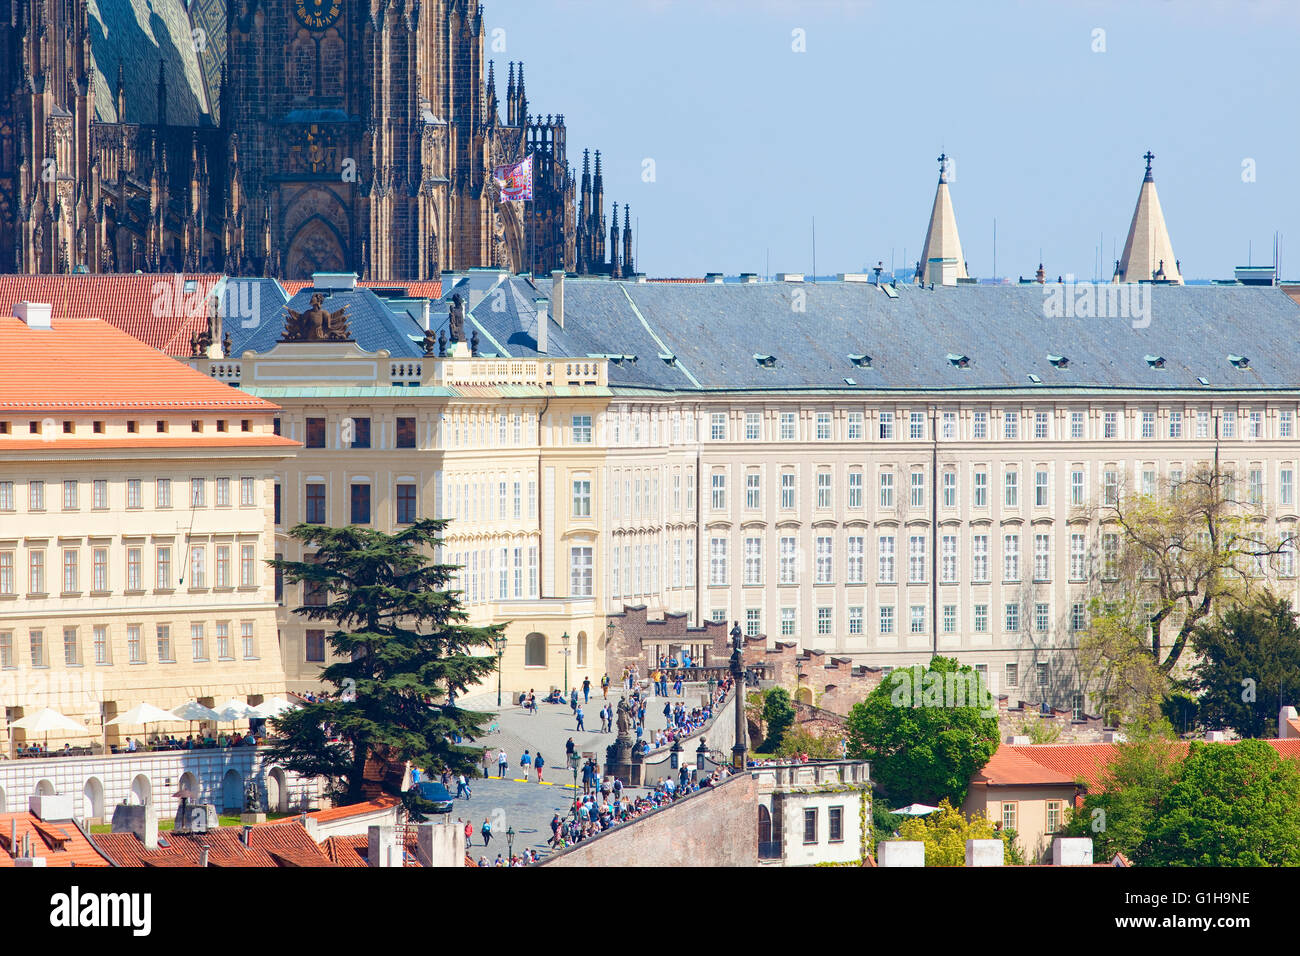 Tschechische Republik, Prag - Hradschin Burg und St. Vitus Kathedrale Stockfoto